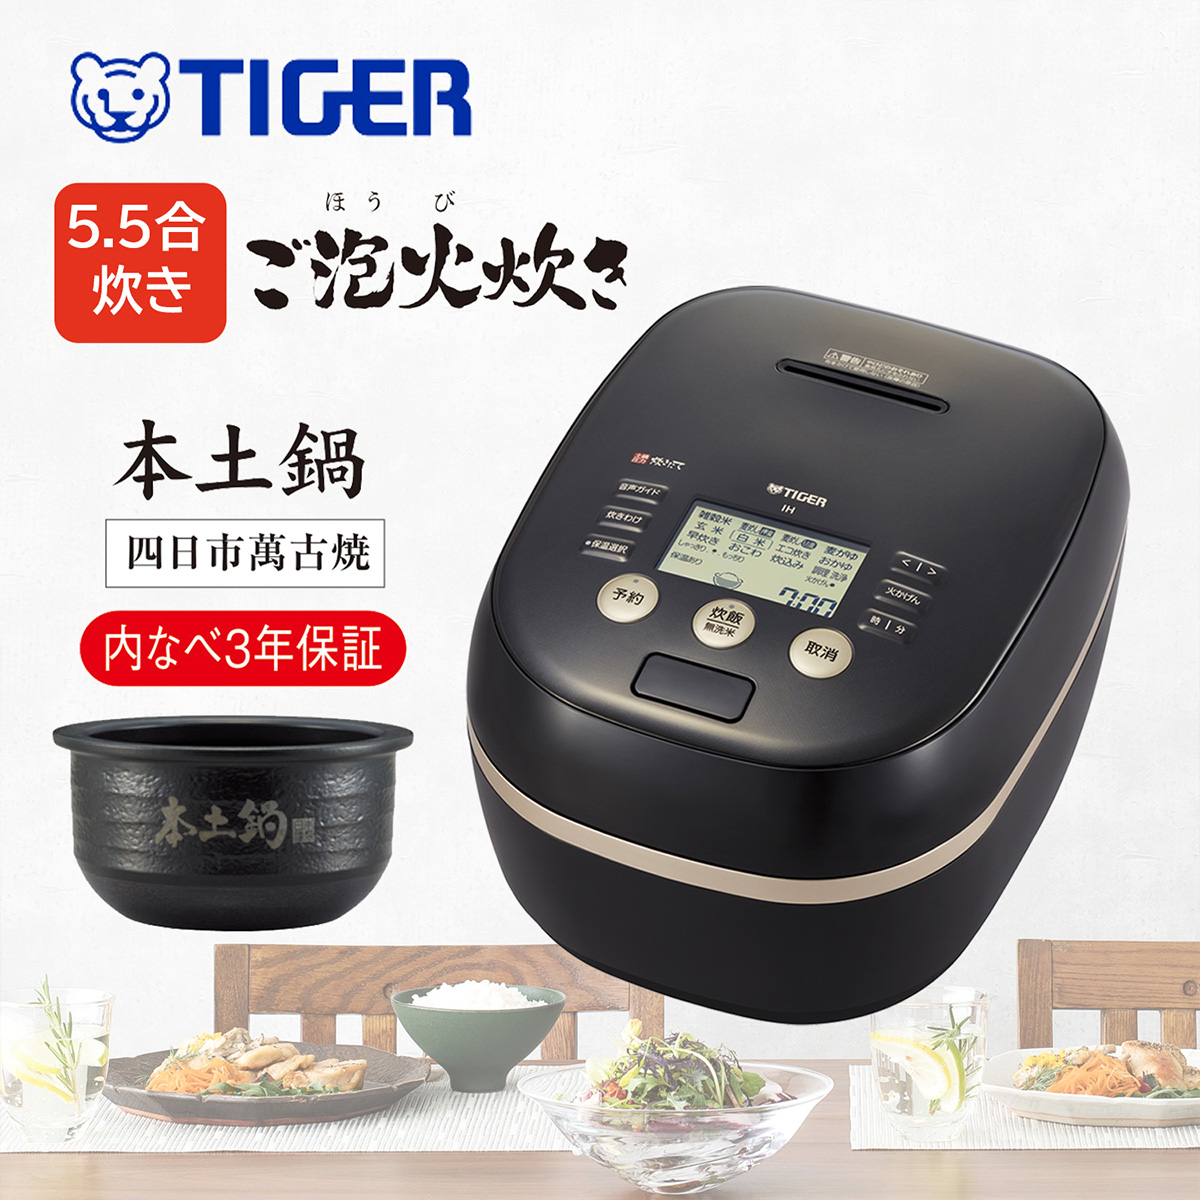 ★新品未開封 TIGER 炊飯器 JPH-A100 ブラック a